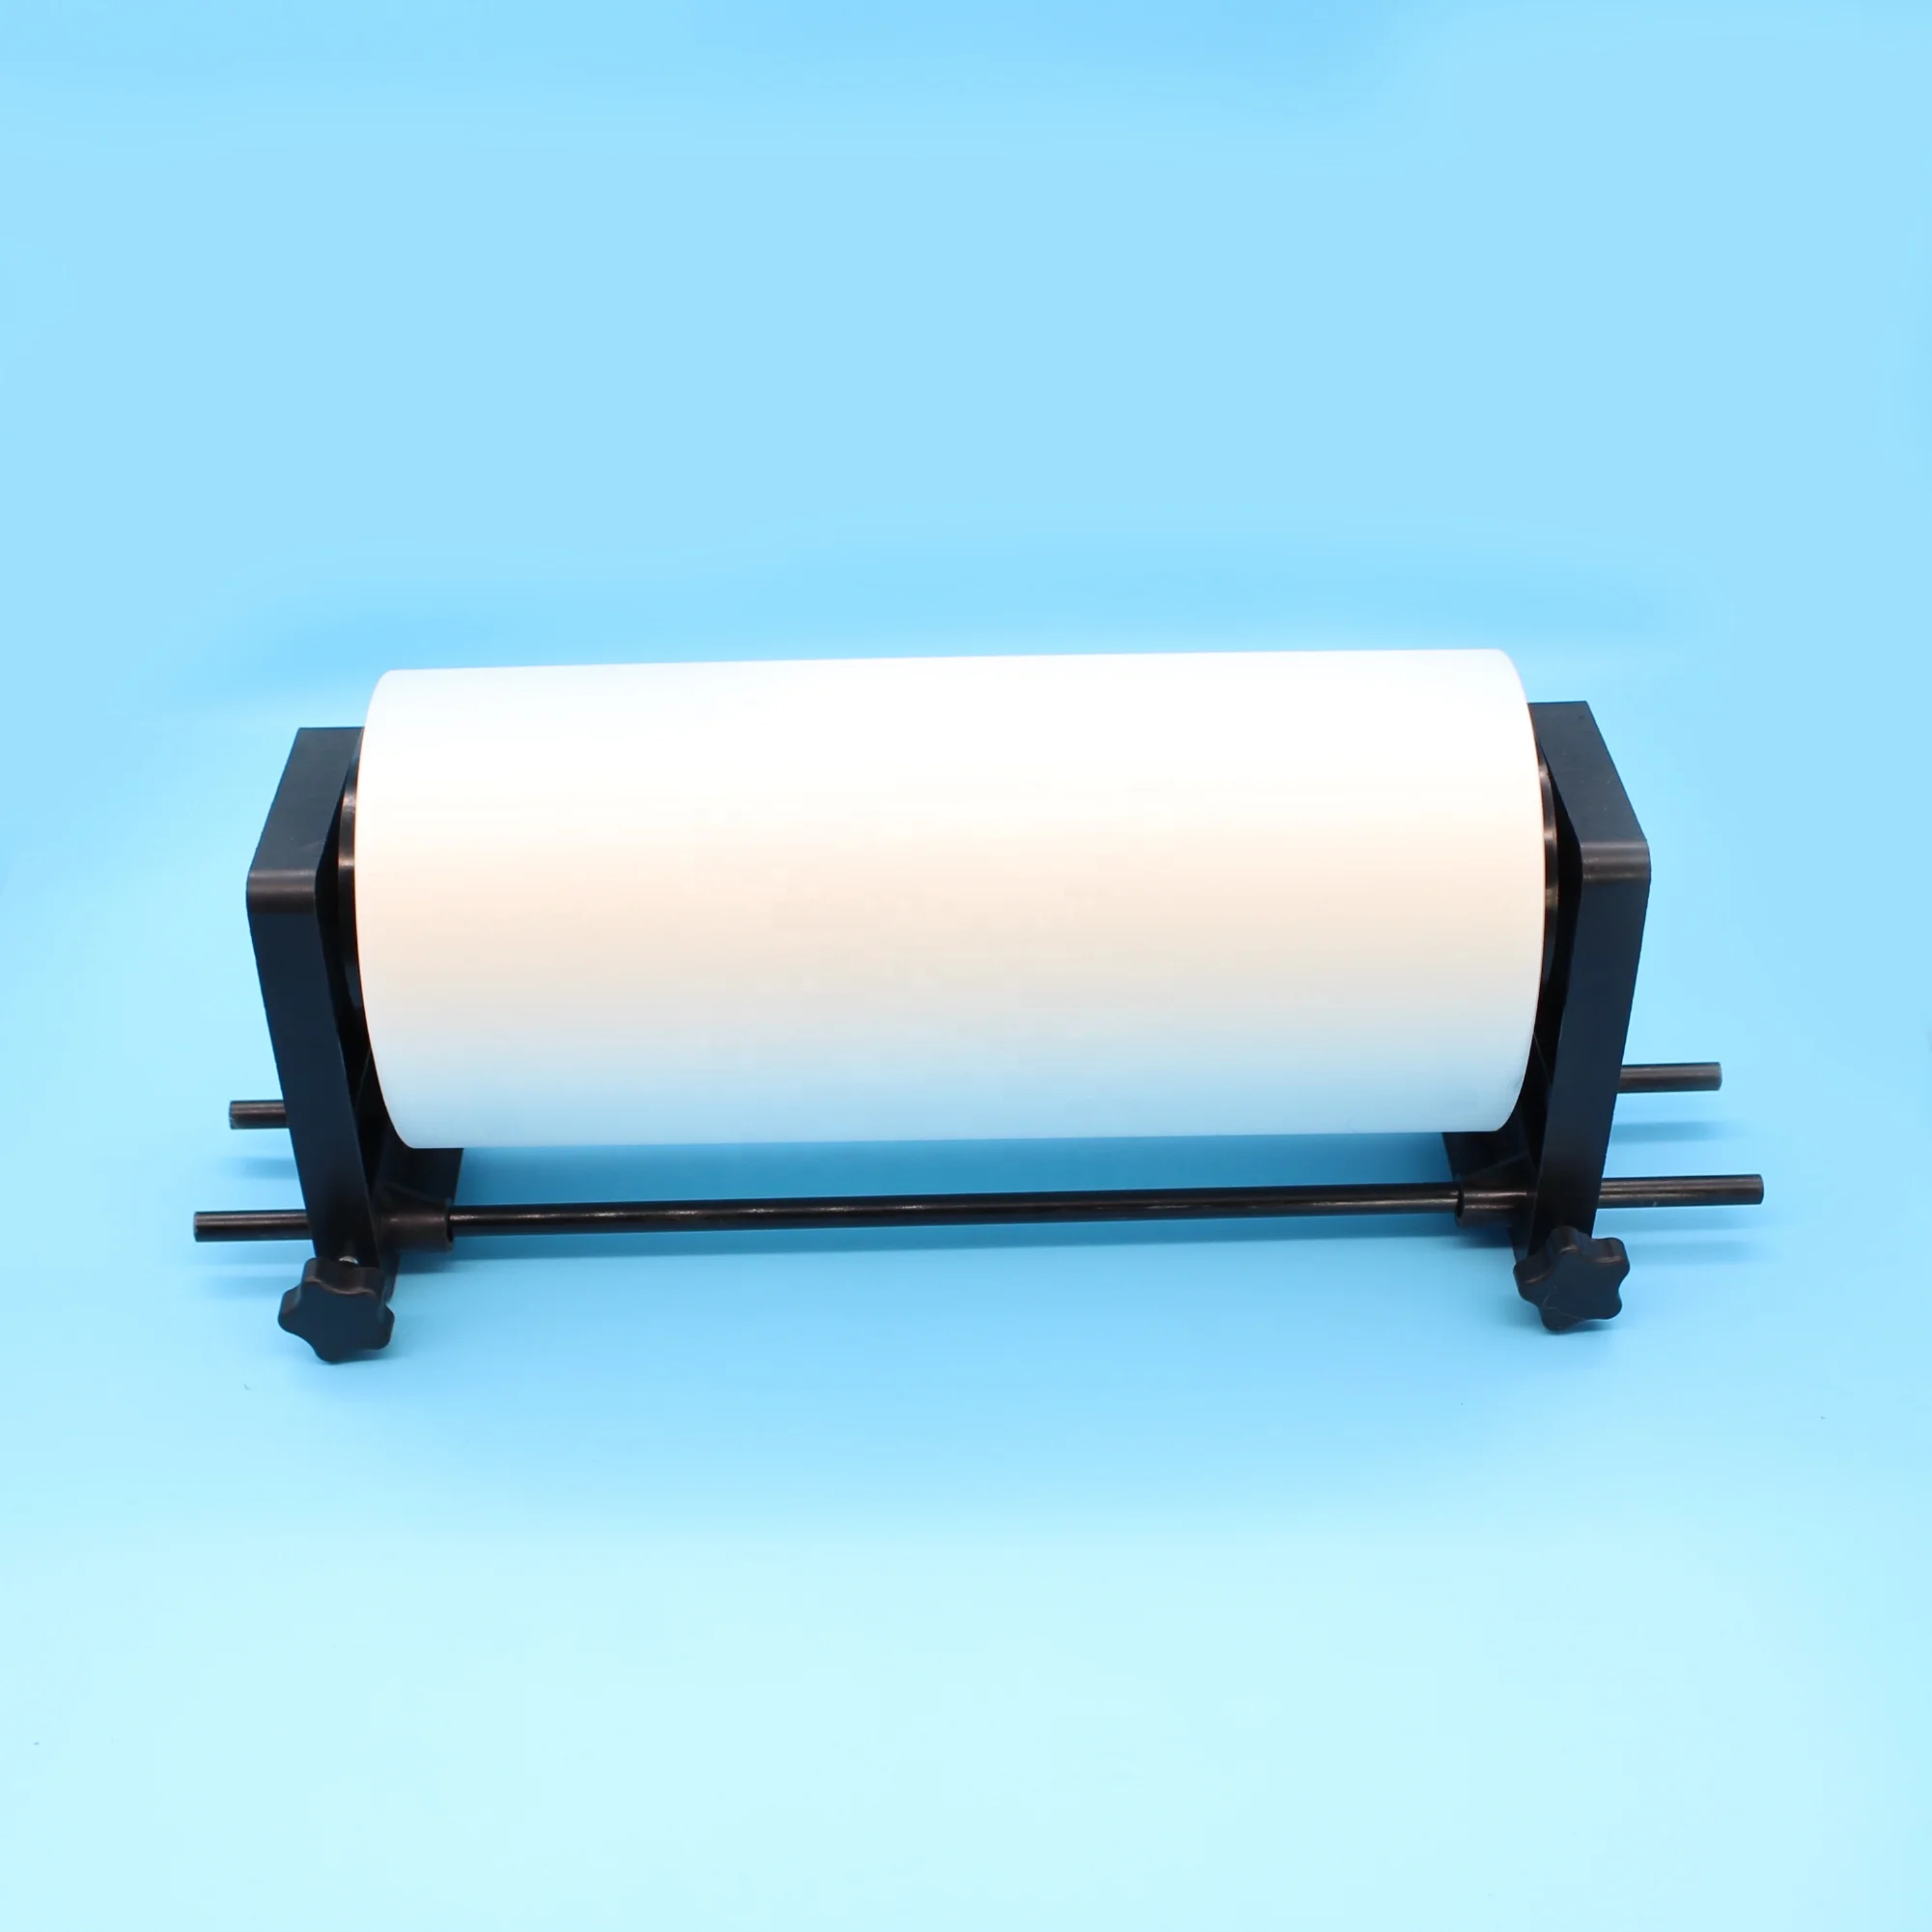 Dtf Roll Film Holder For A3 A4 Dtf Printer Holder For Epson L805 R1390 L1800 Xp 15000 L800 5921